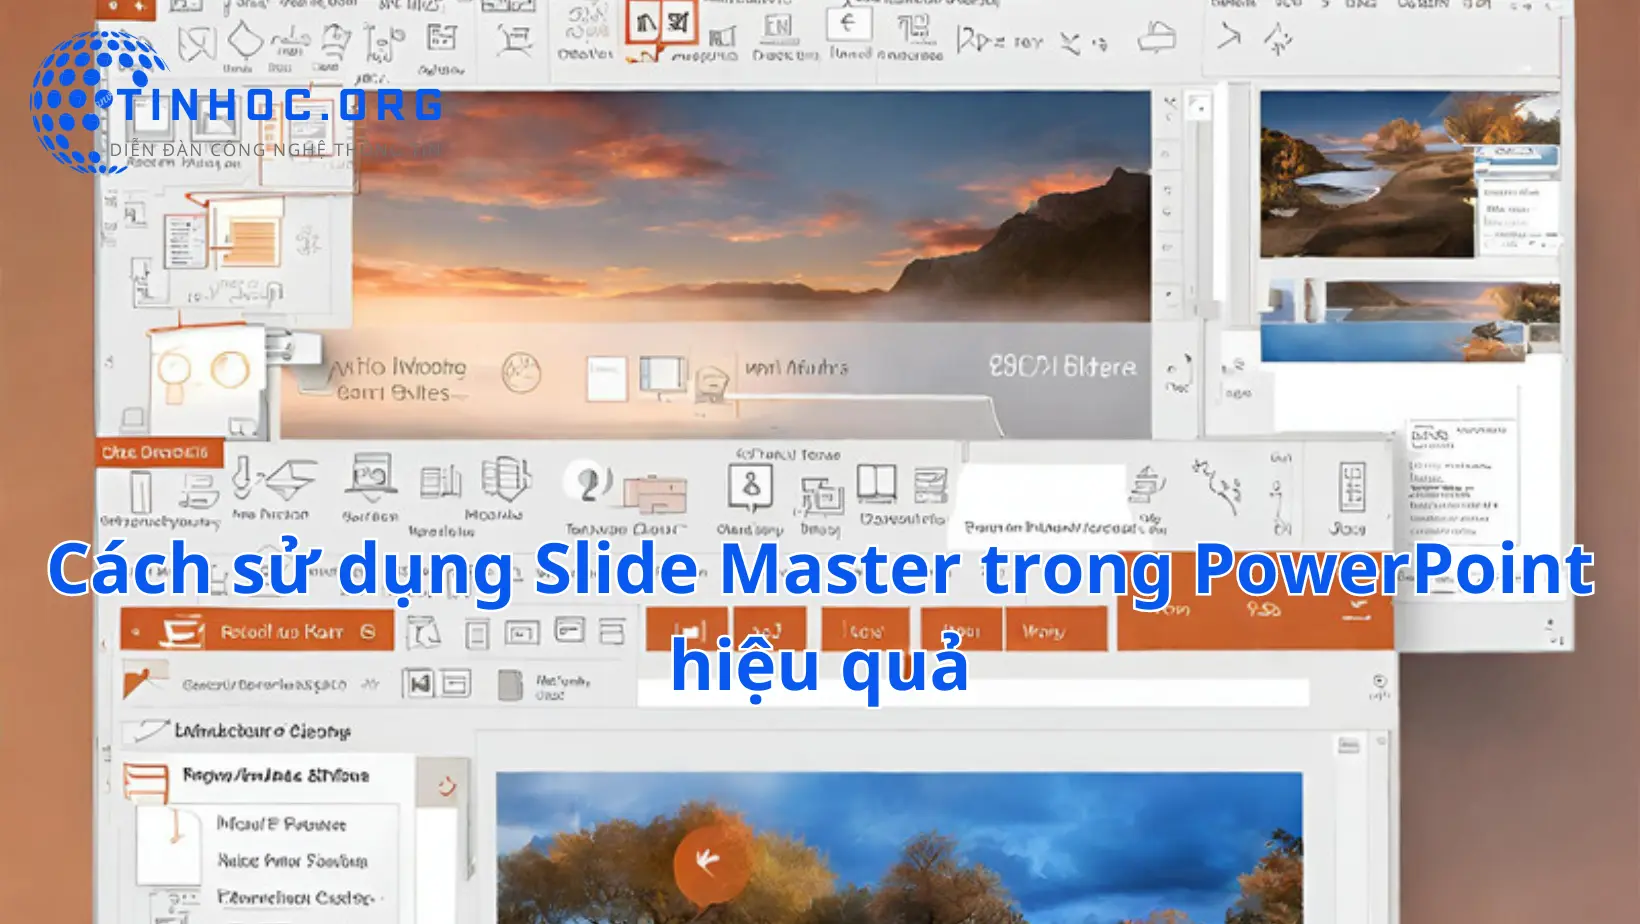 Slide Master là một tính năng quan trọng trong PowerPoint giúp bạn tạo ra các bài thuyết trình chuyên nghiệp và thống nhất.